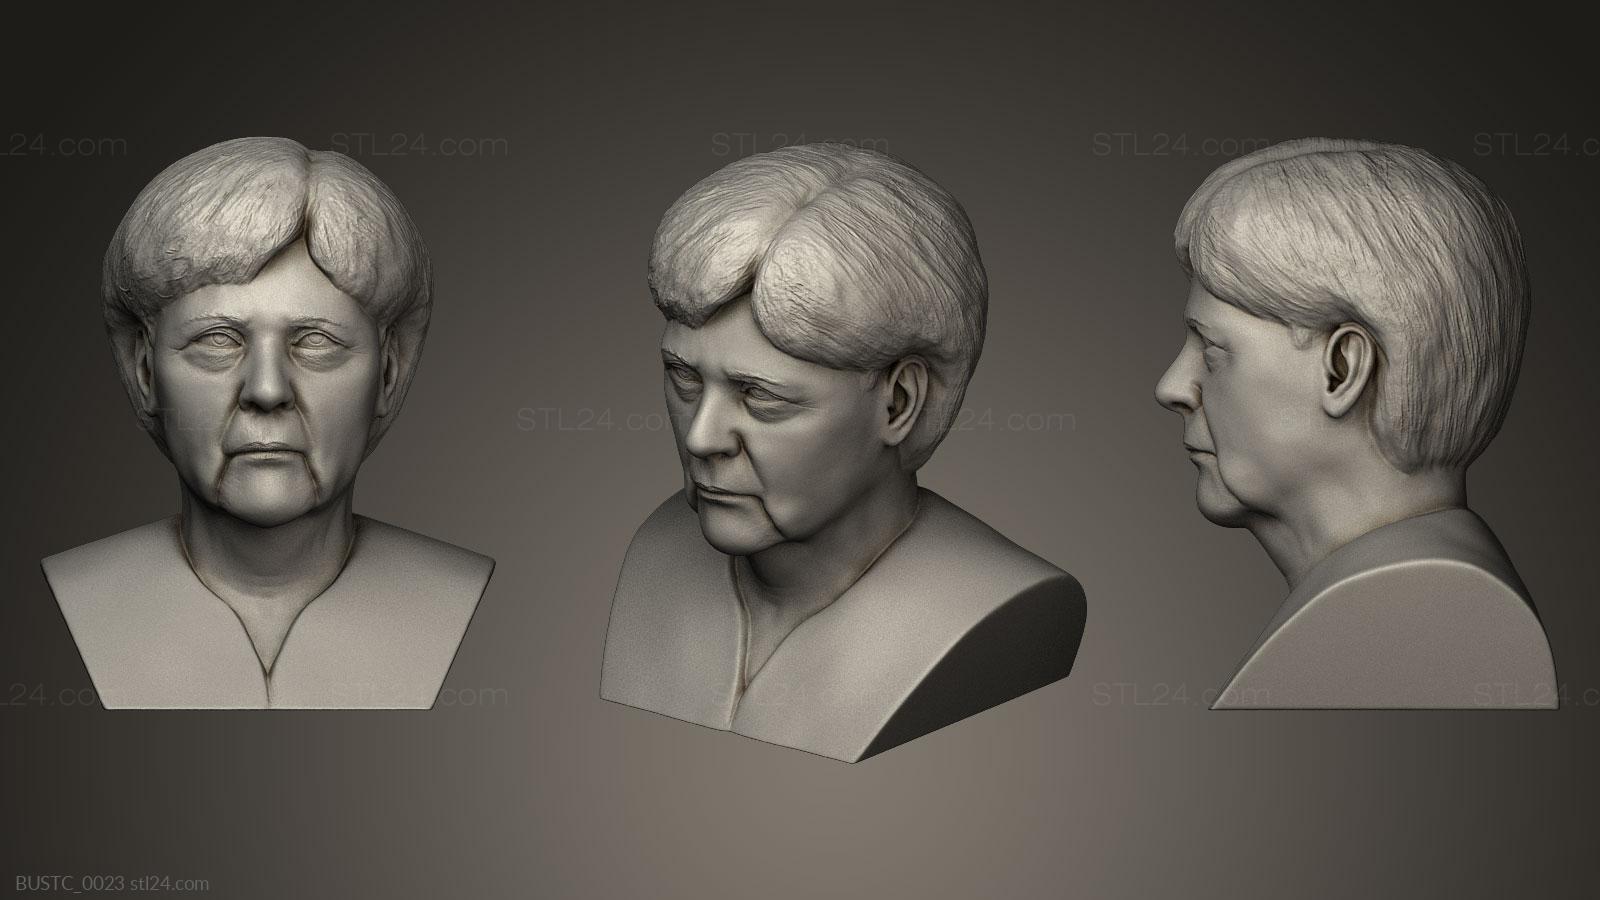 Бюсты и барельефы известных личностей (Ангела Меркель, BUSTC_0023) 3D модель для ЧПУ станка